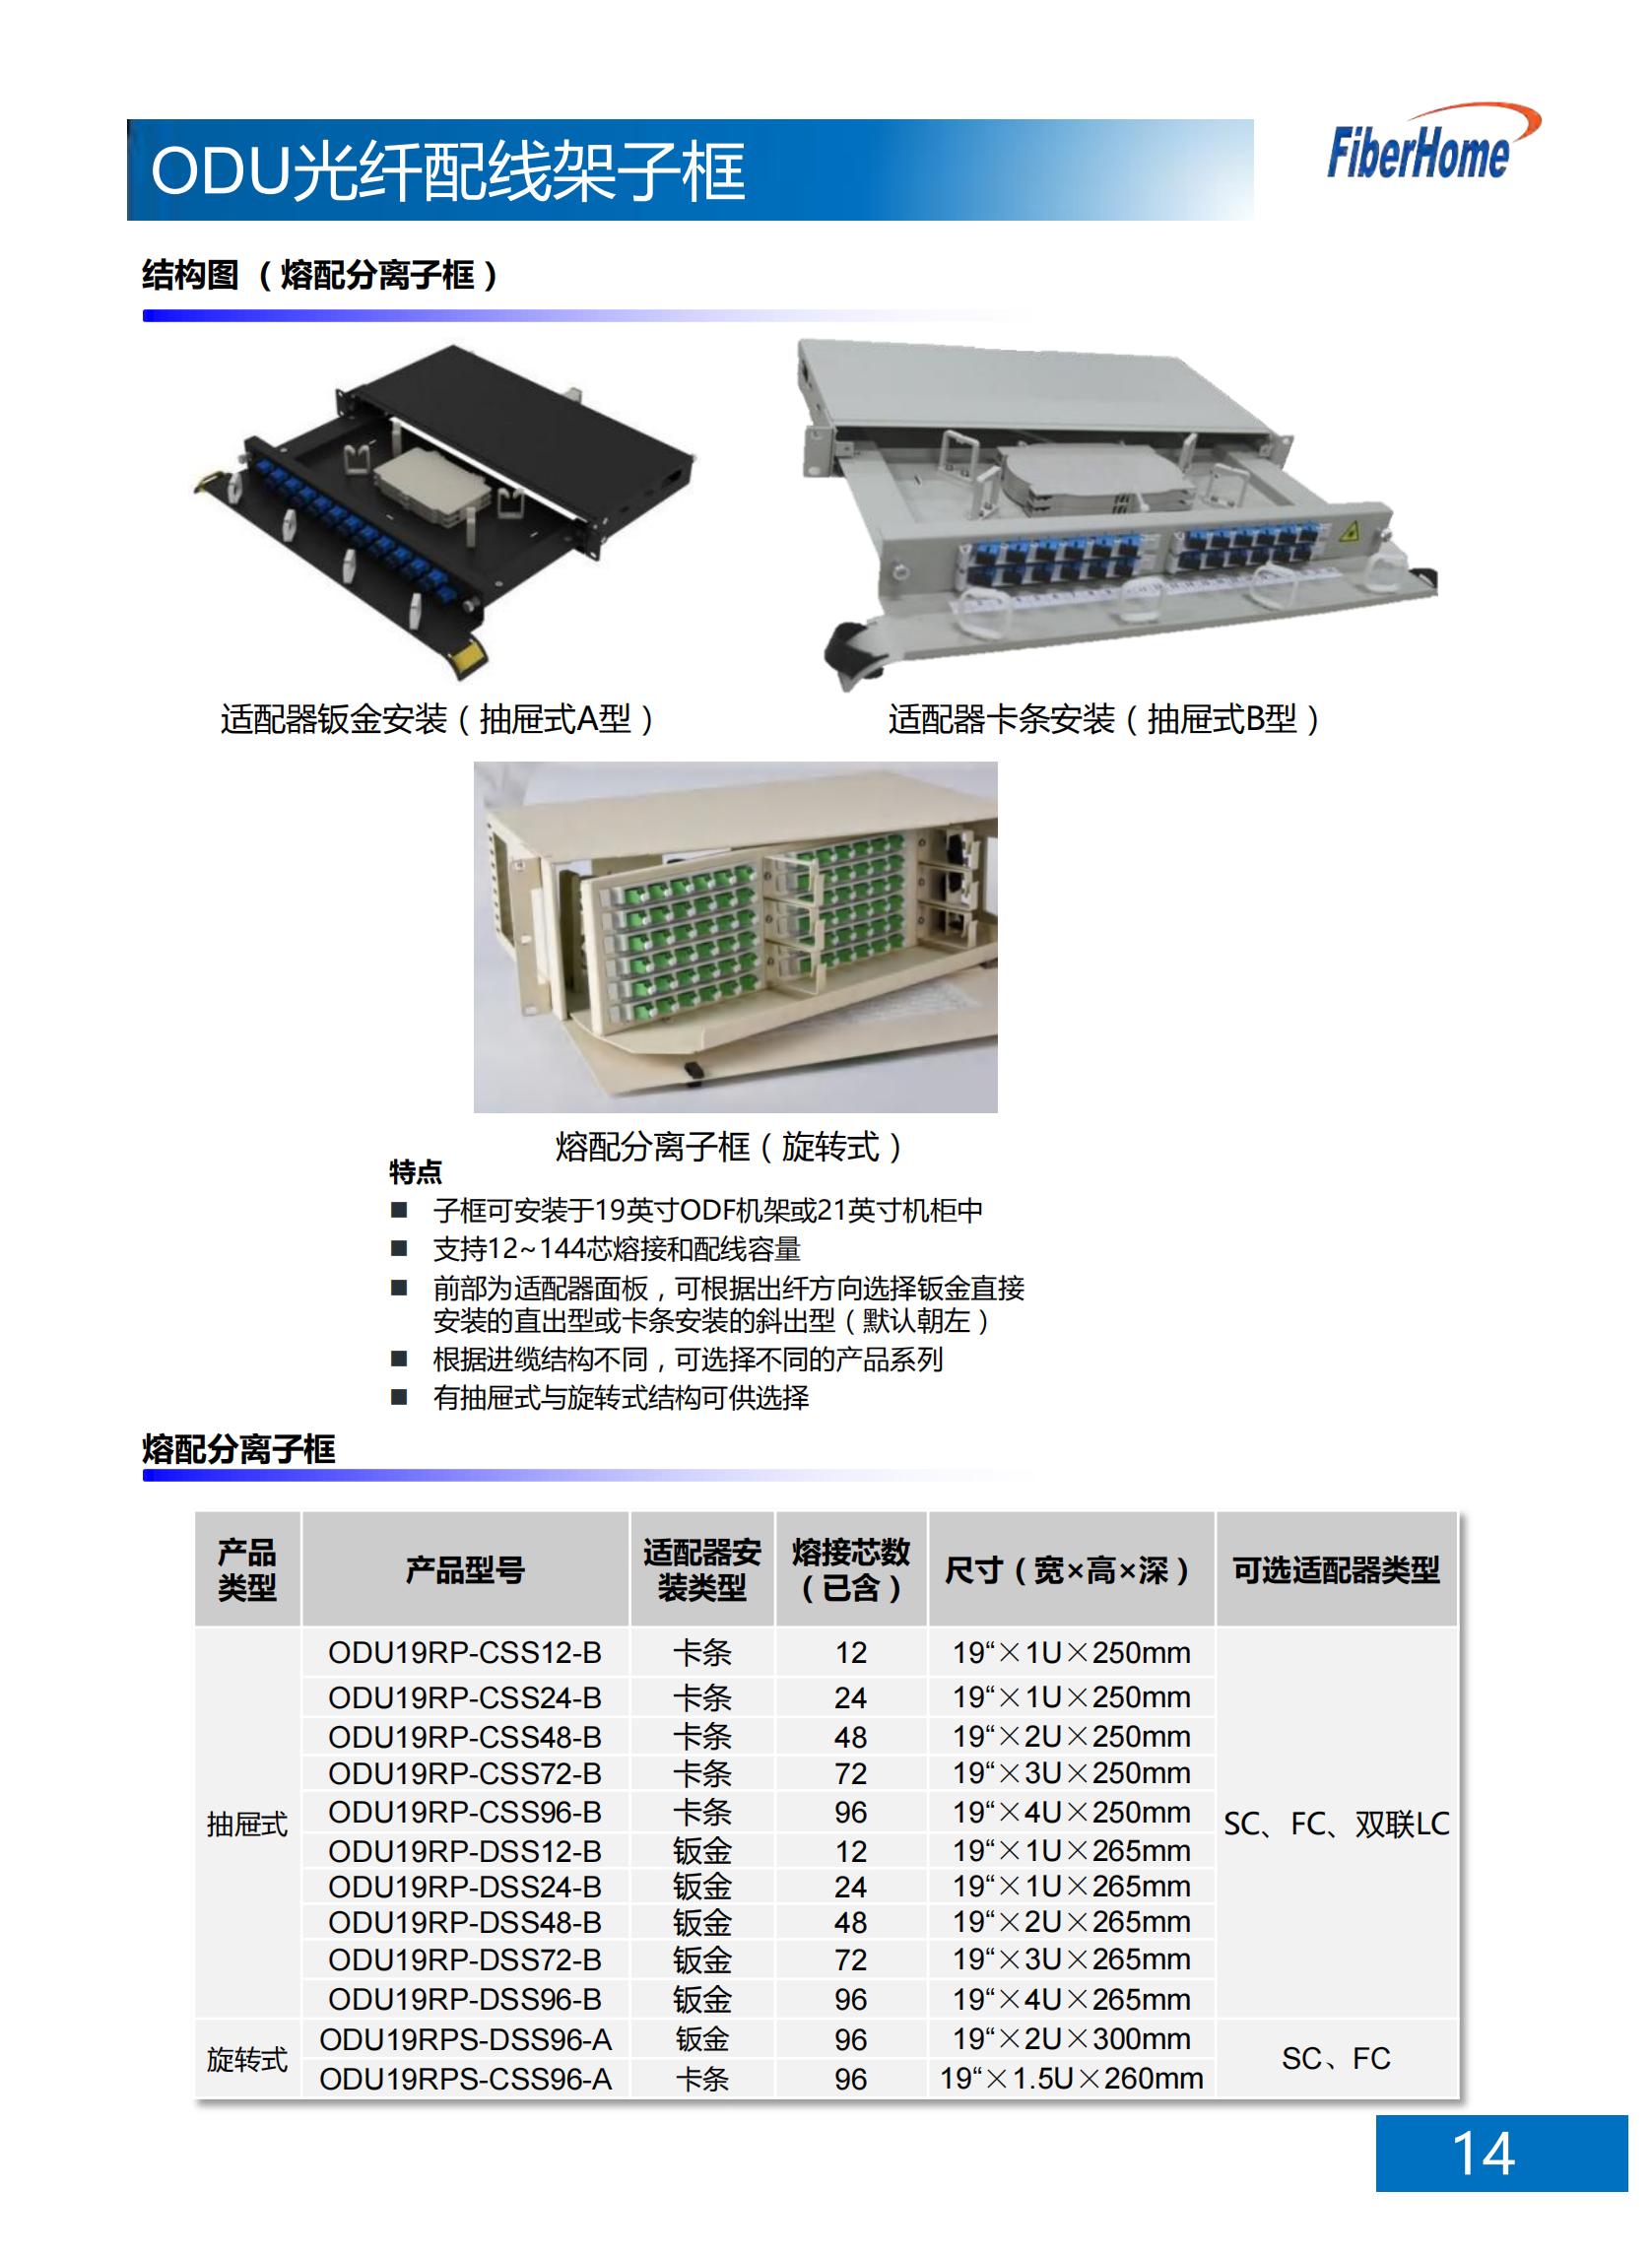 96芯 ODU光纤配线架子框 ODU19T-A1296-B-FC （含12芯FC熔配一体化单元*8）